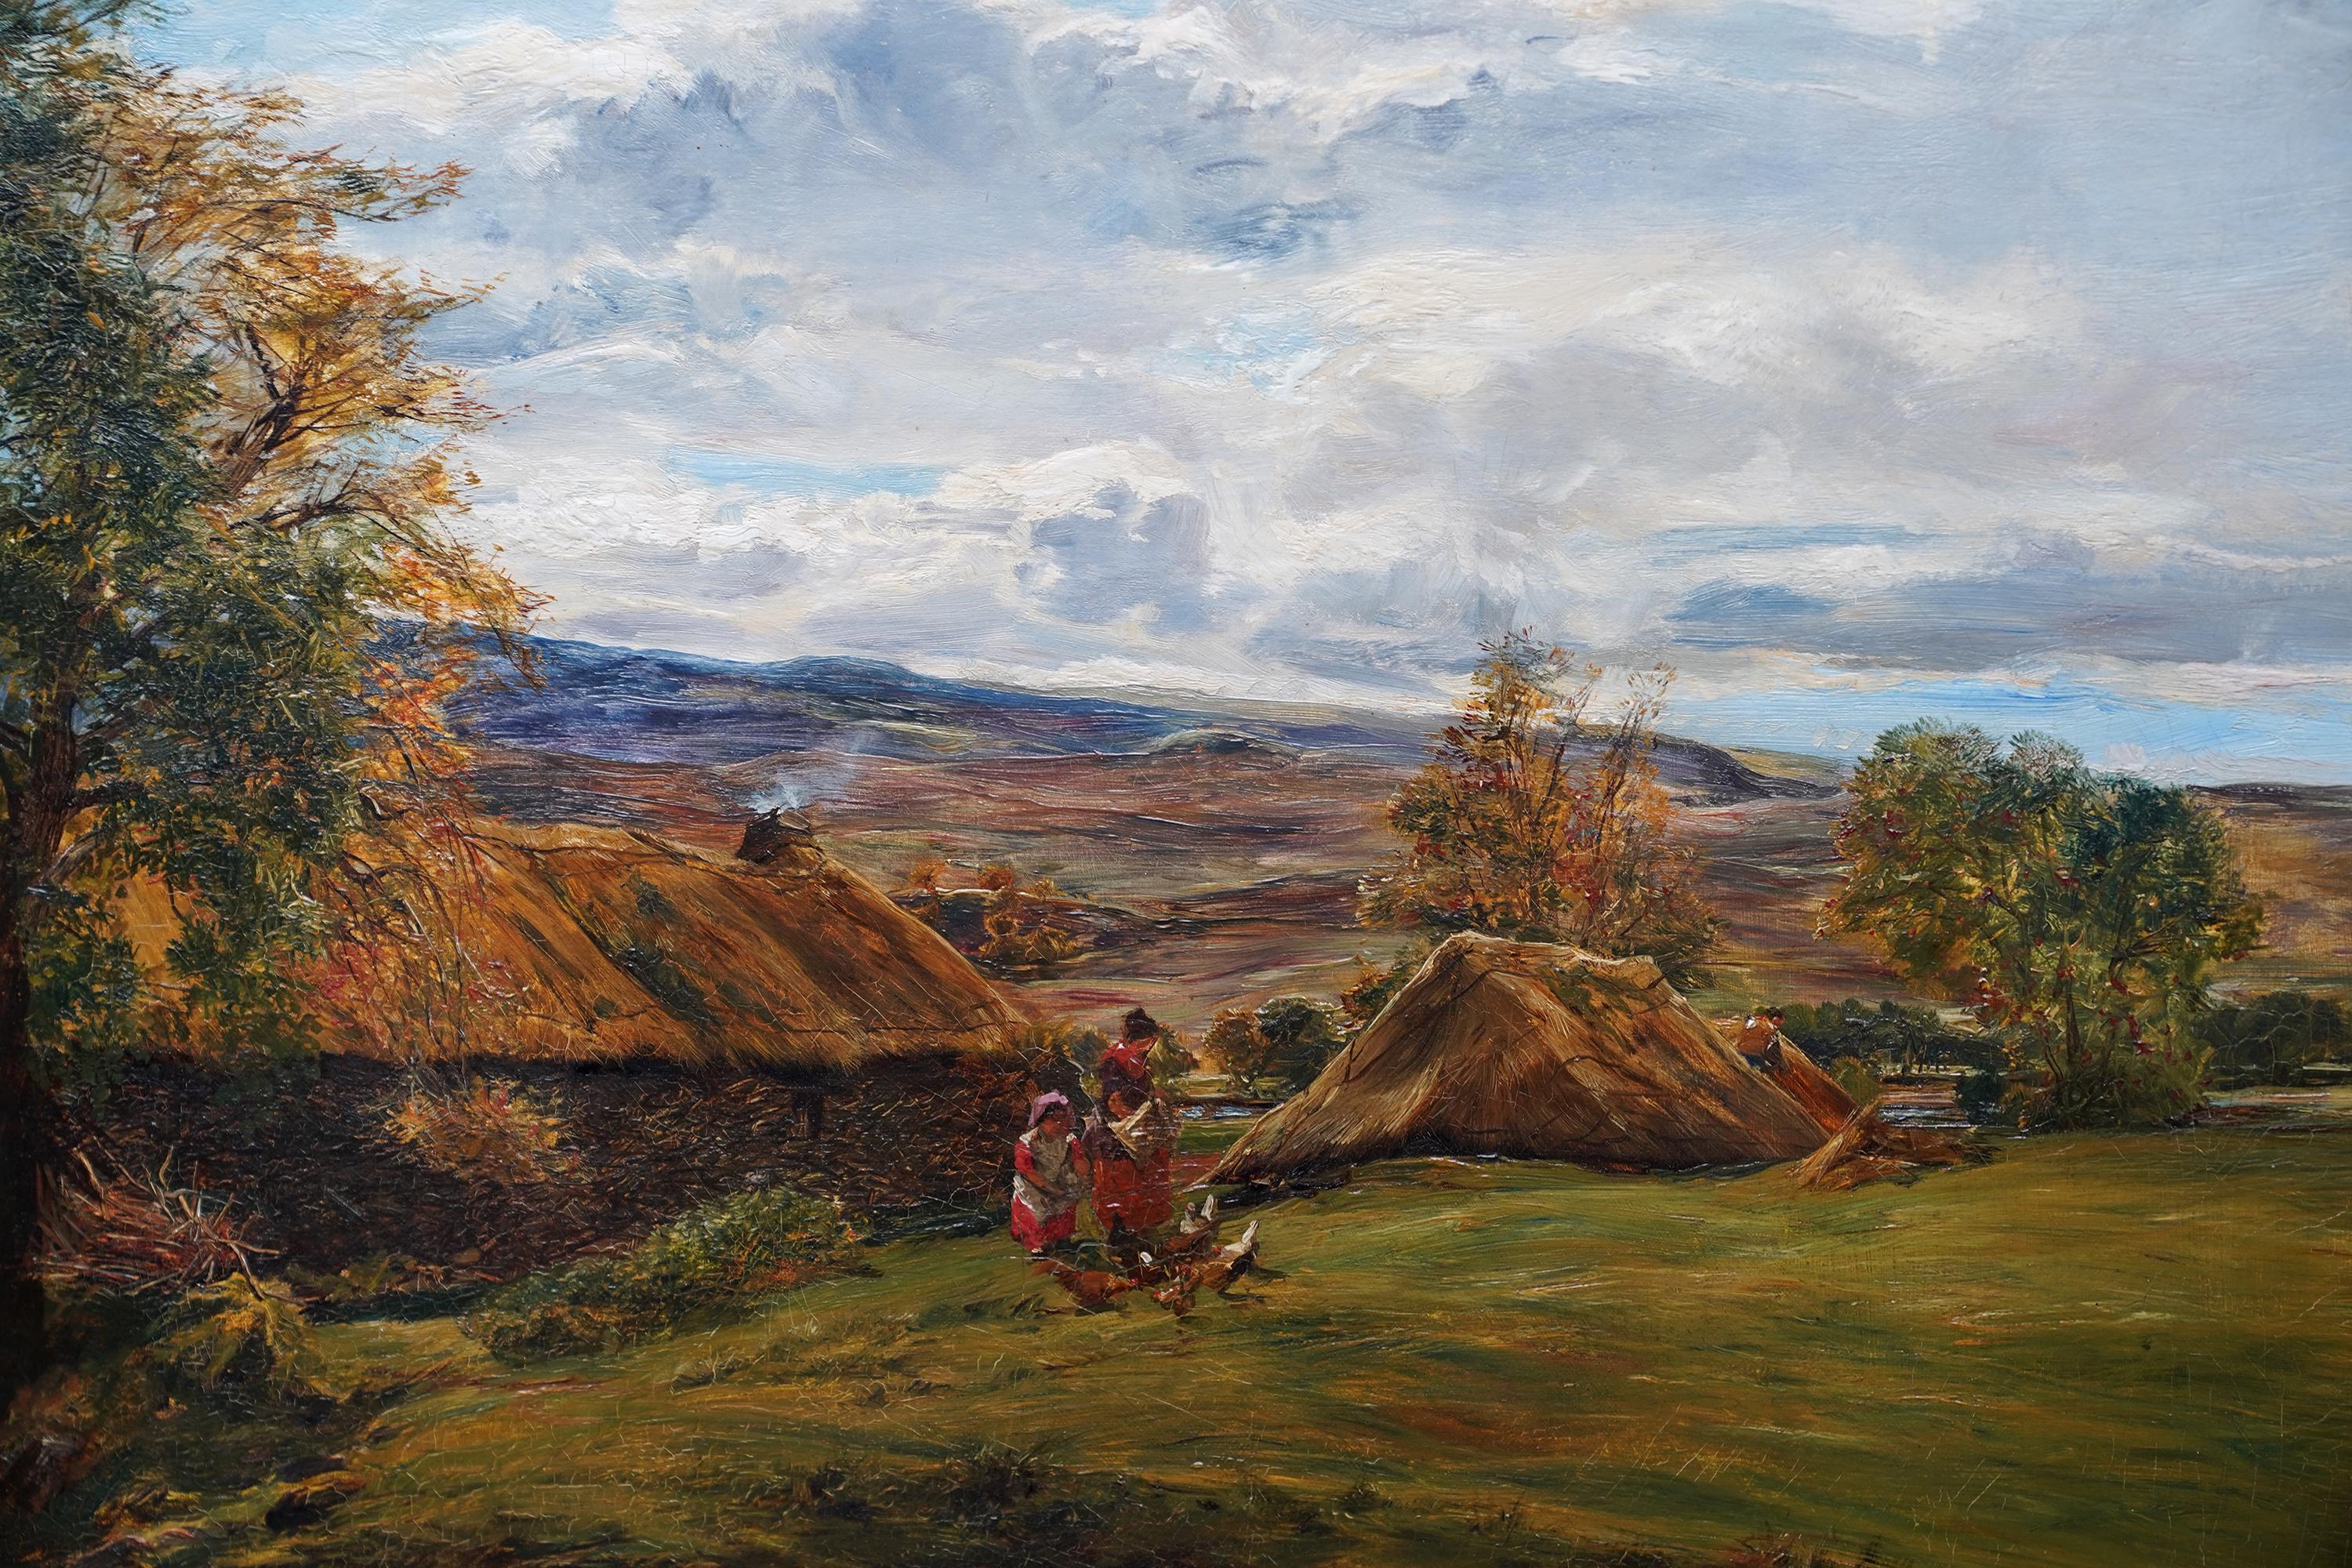 Feeding Chickens by a Farm in Summer – schottisches viktorianisches Landschaftsgemälde (Realismus), Painting, von Alexander Fraser 